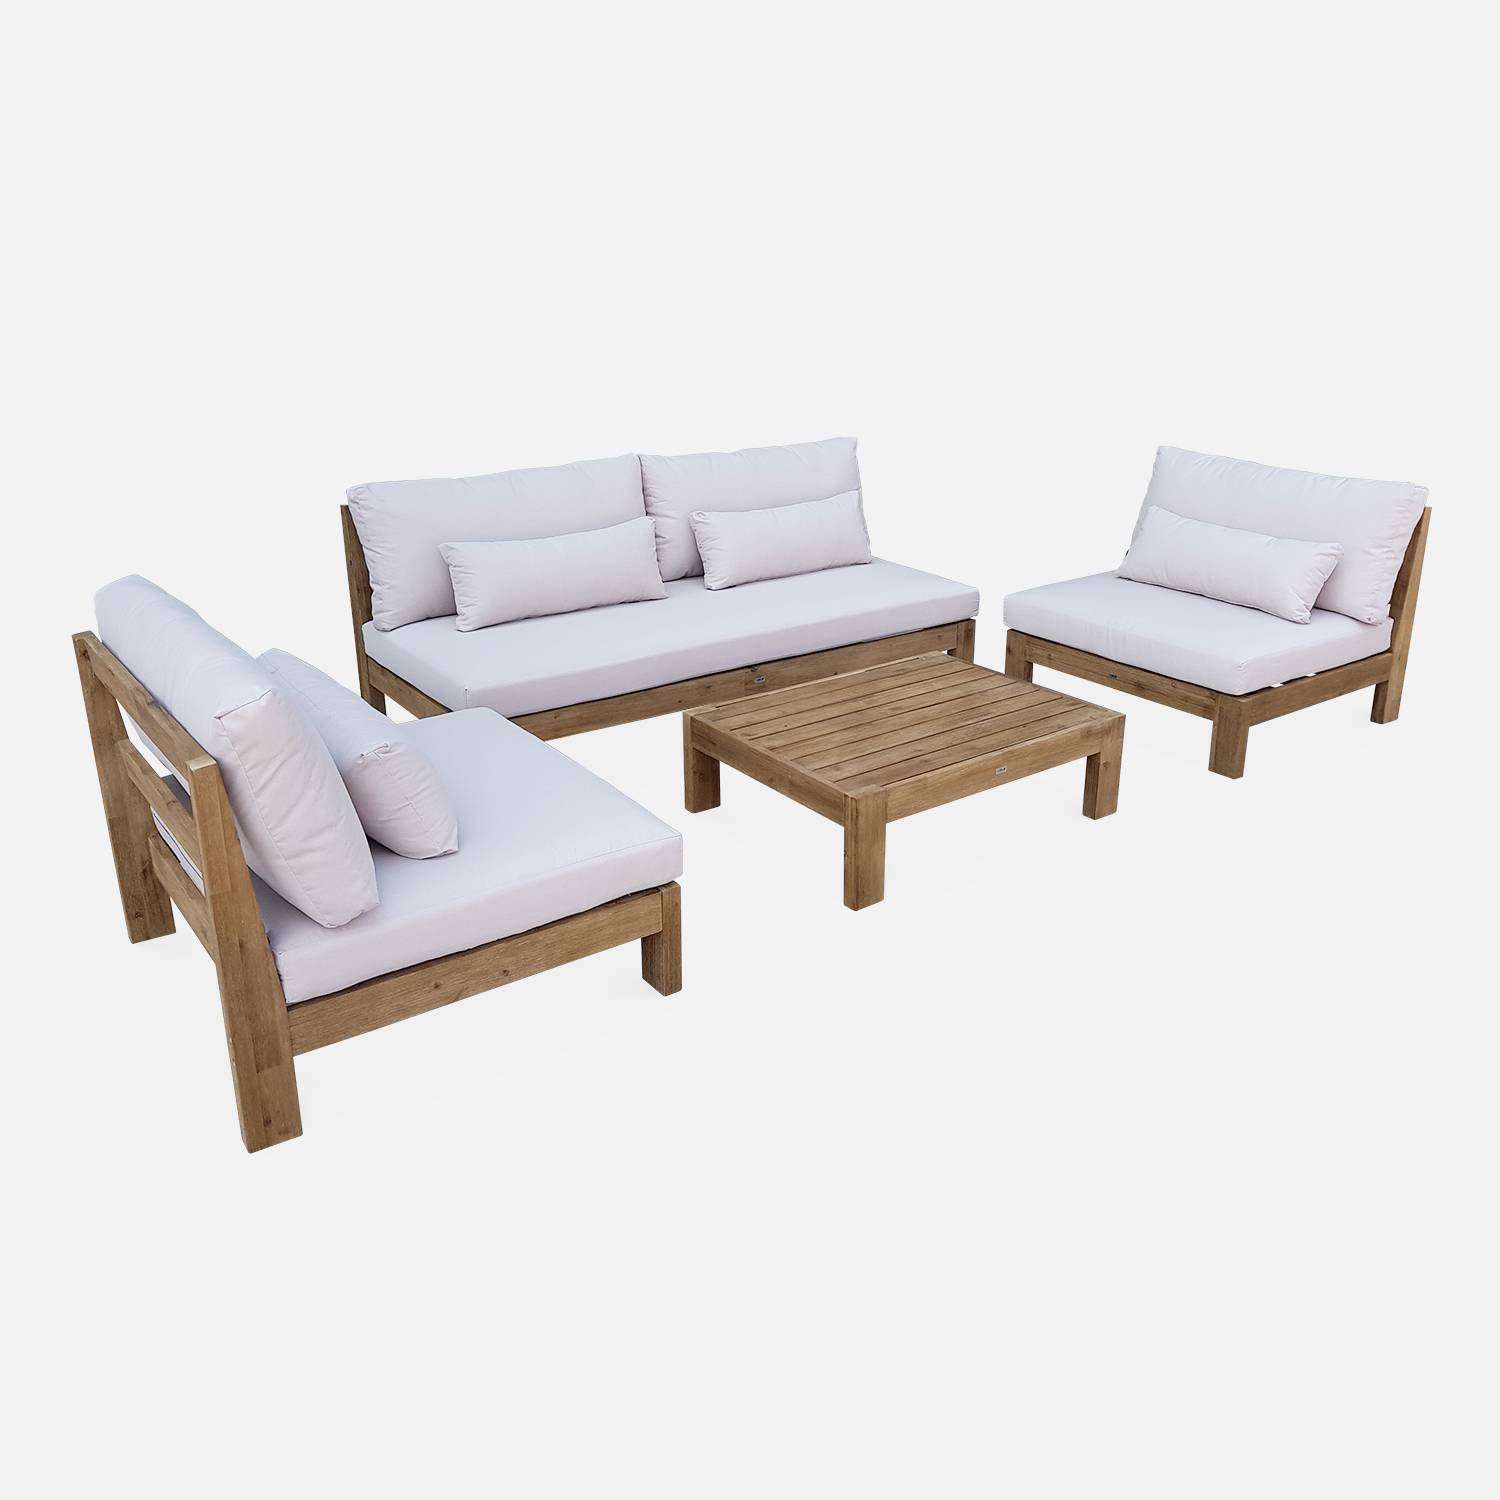  Conjunto de móveis de jardim XXL em madeira escovada, efeito branqueado - BAHIA - almofadas bege, ultra confortáveis, 5 a 7 lugares garden-lounge-xxl-wood-brush-white-bahia-cushions-beige Photo4